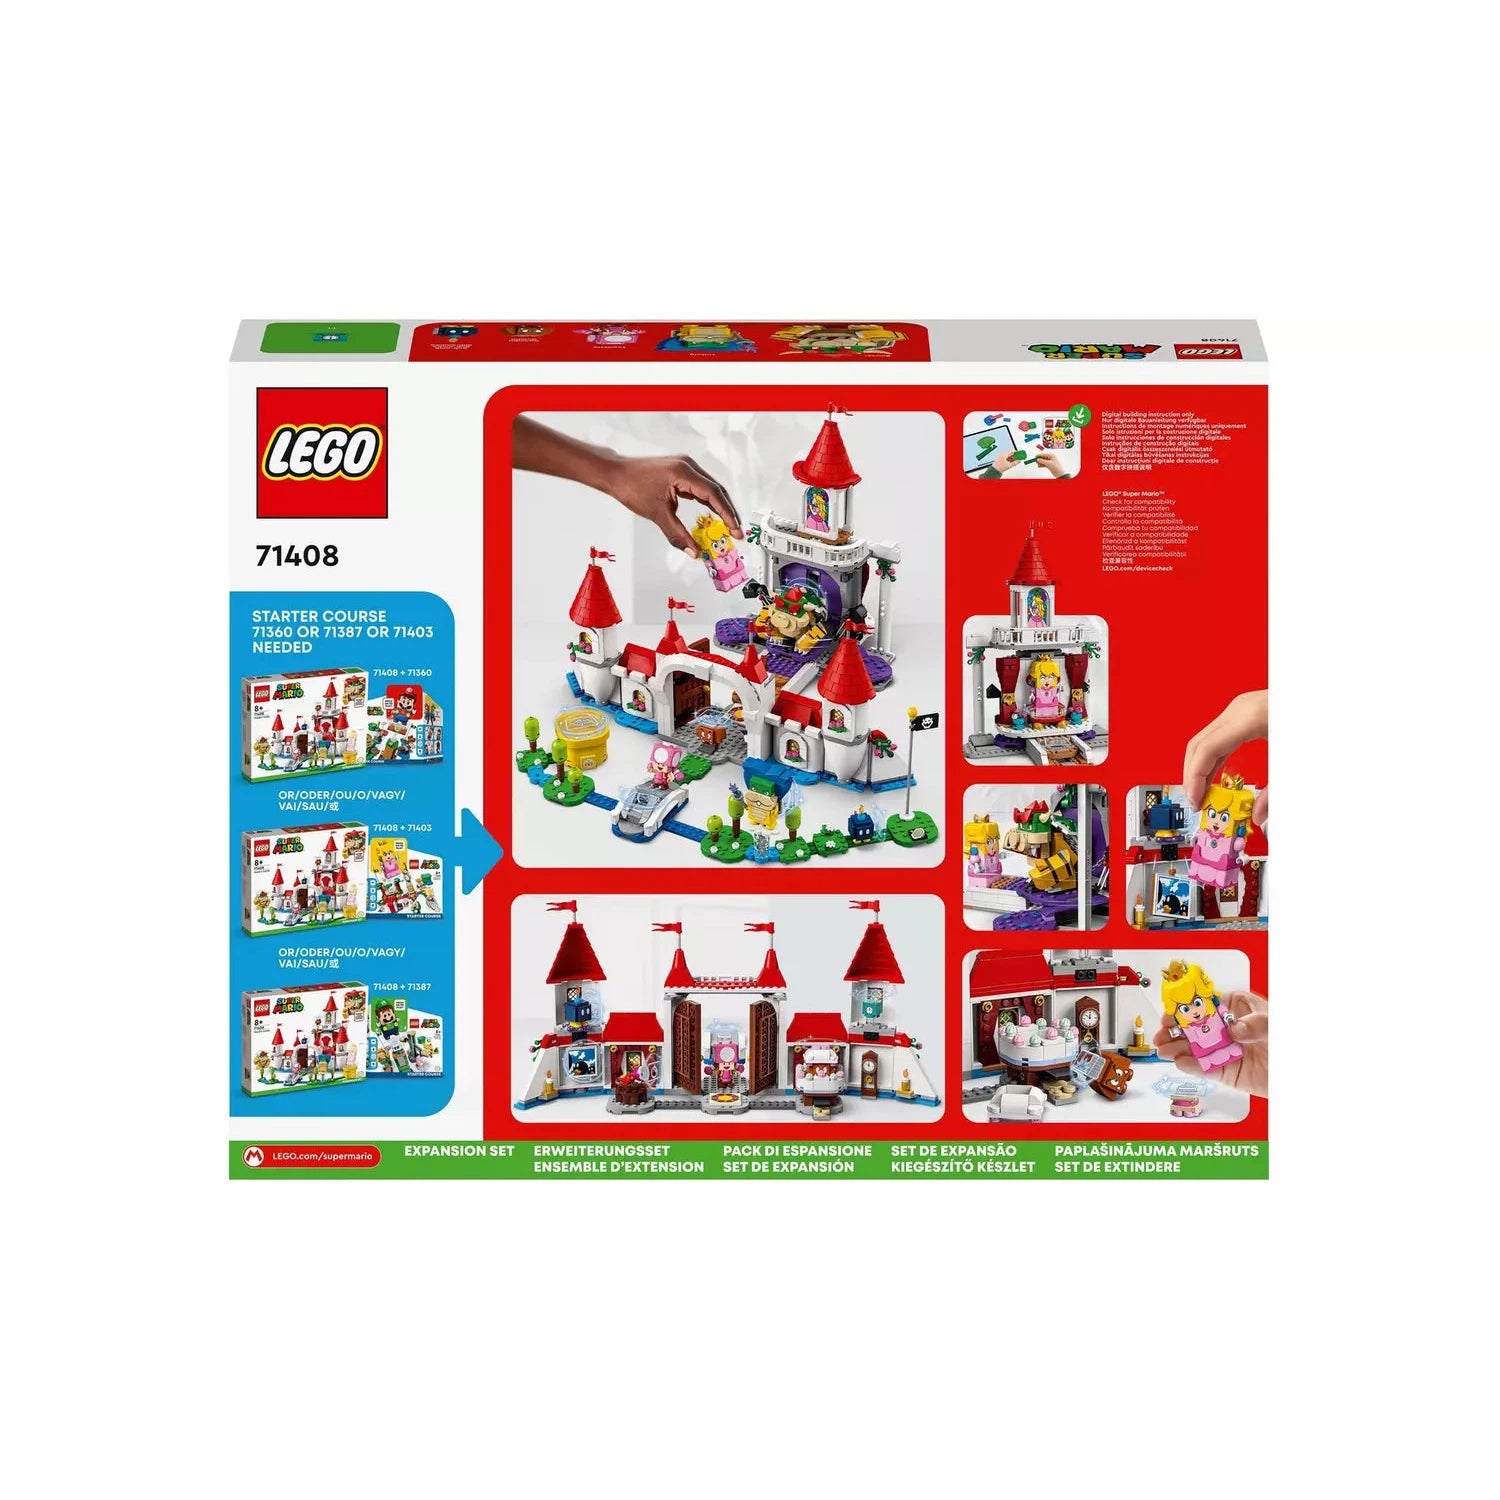 Lego Super Mario 71408 Peach's Castle Expansion Set